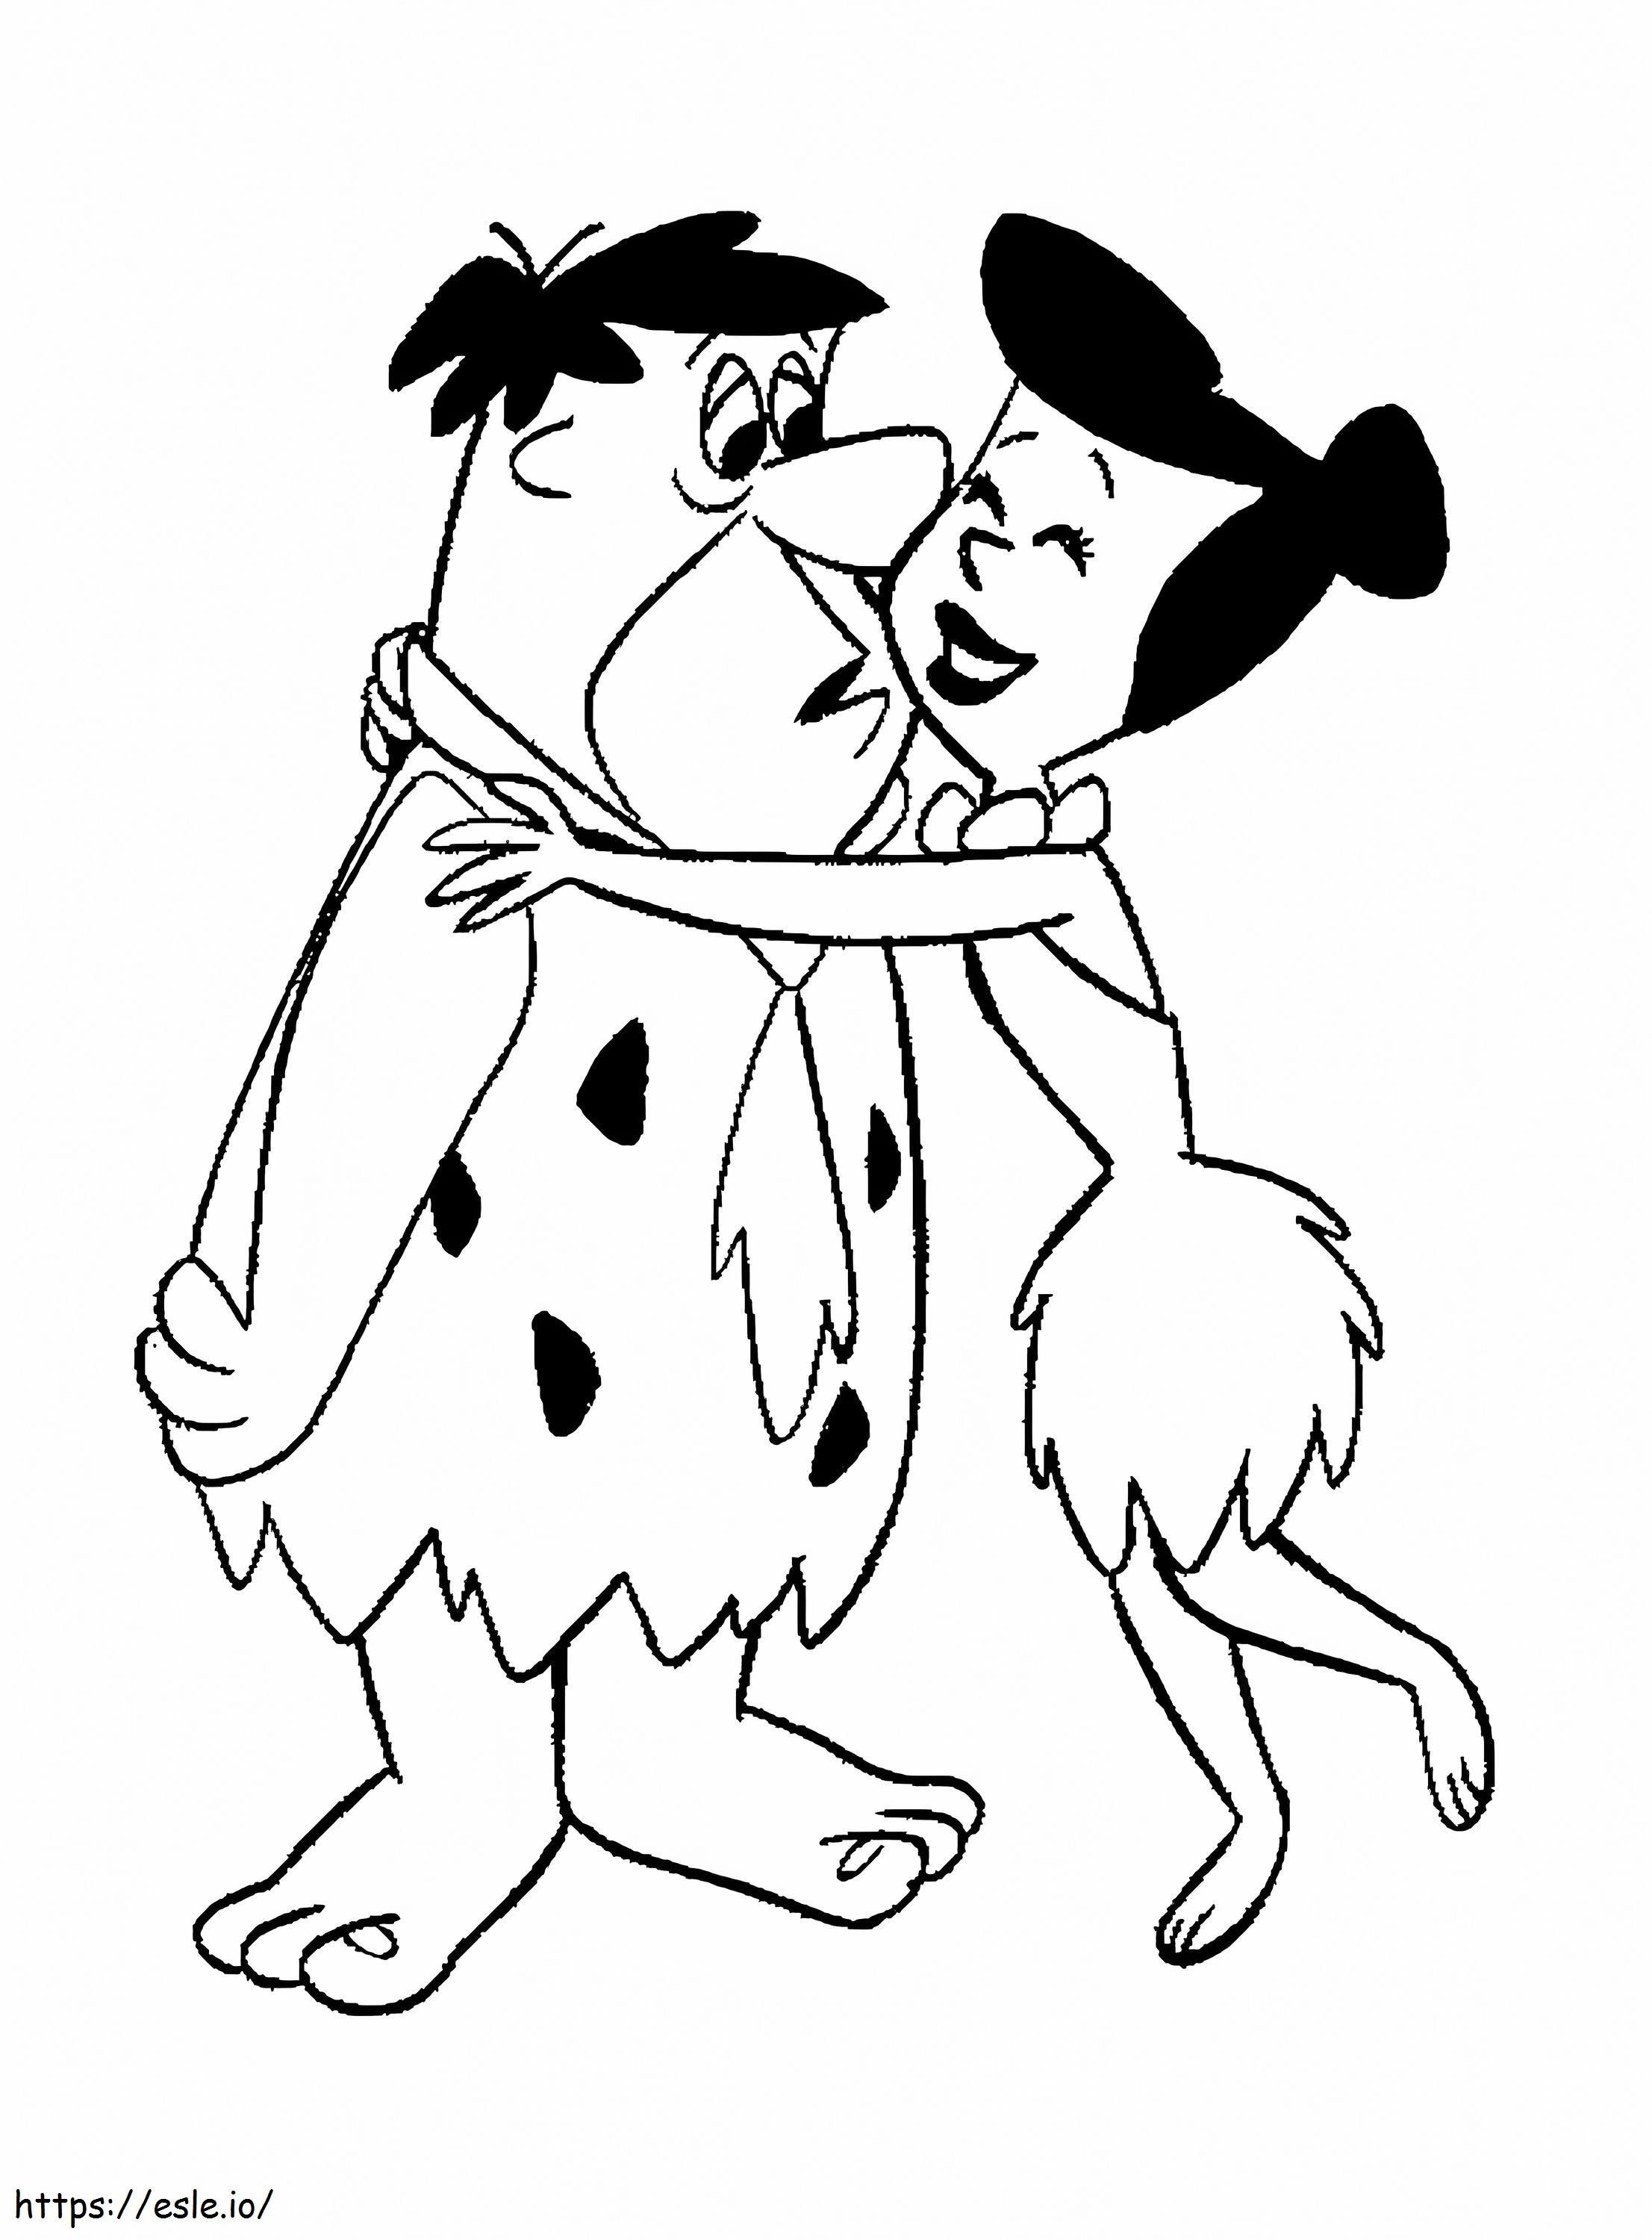 Fred ja Wilma värityskuva